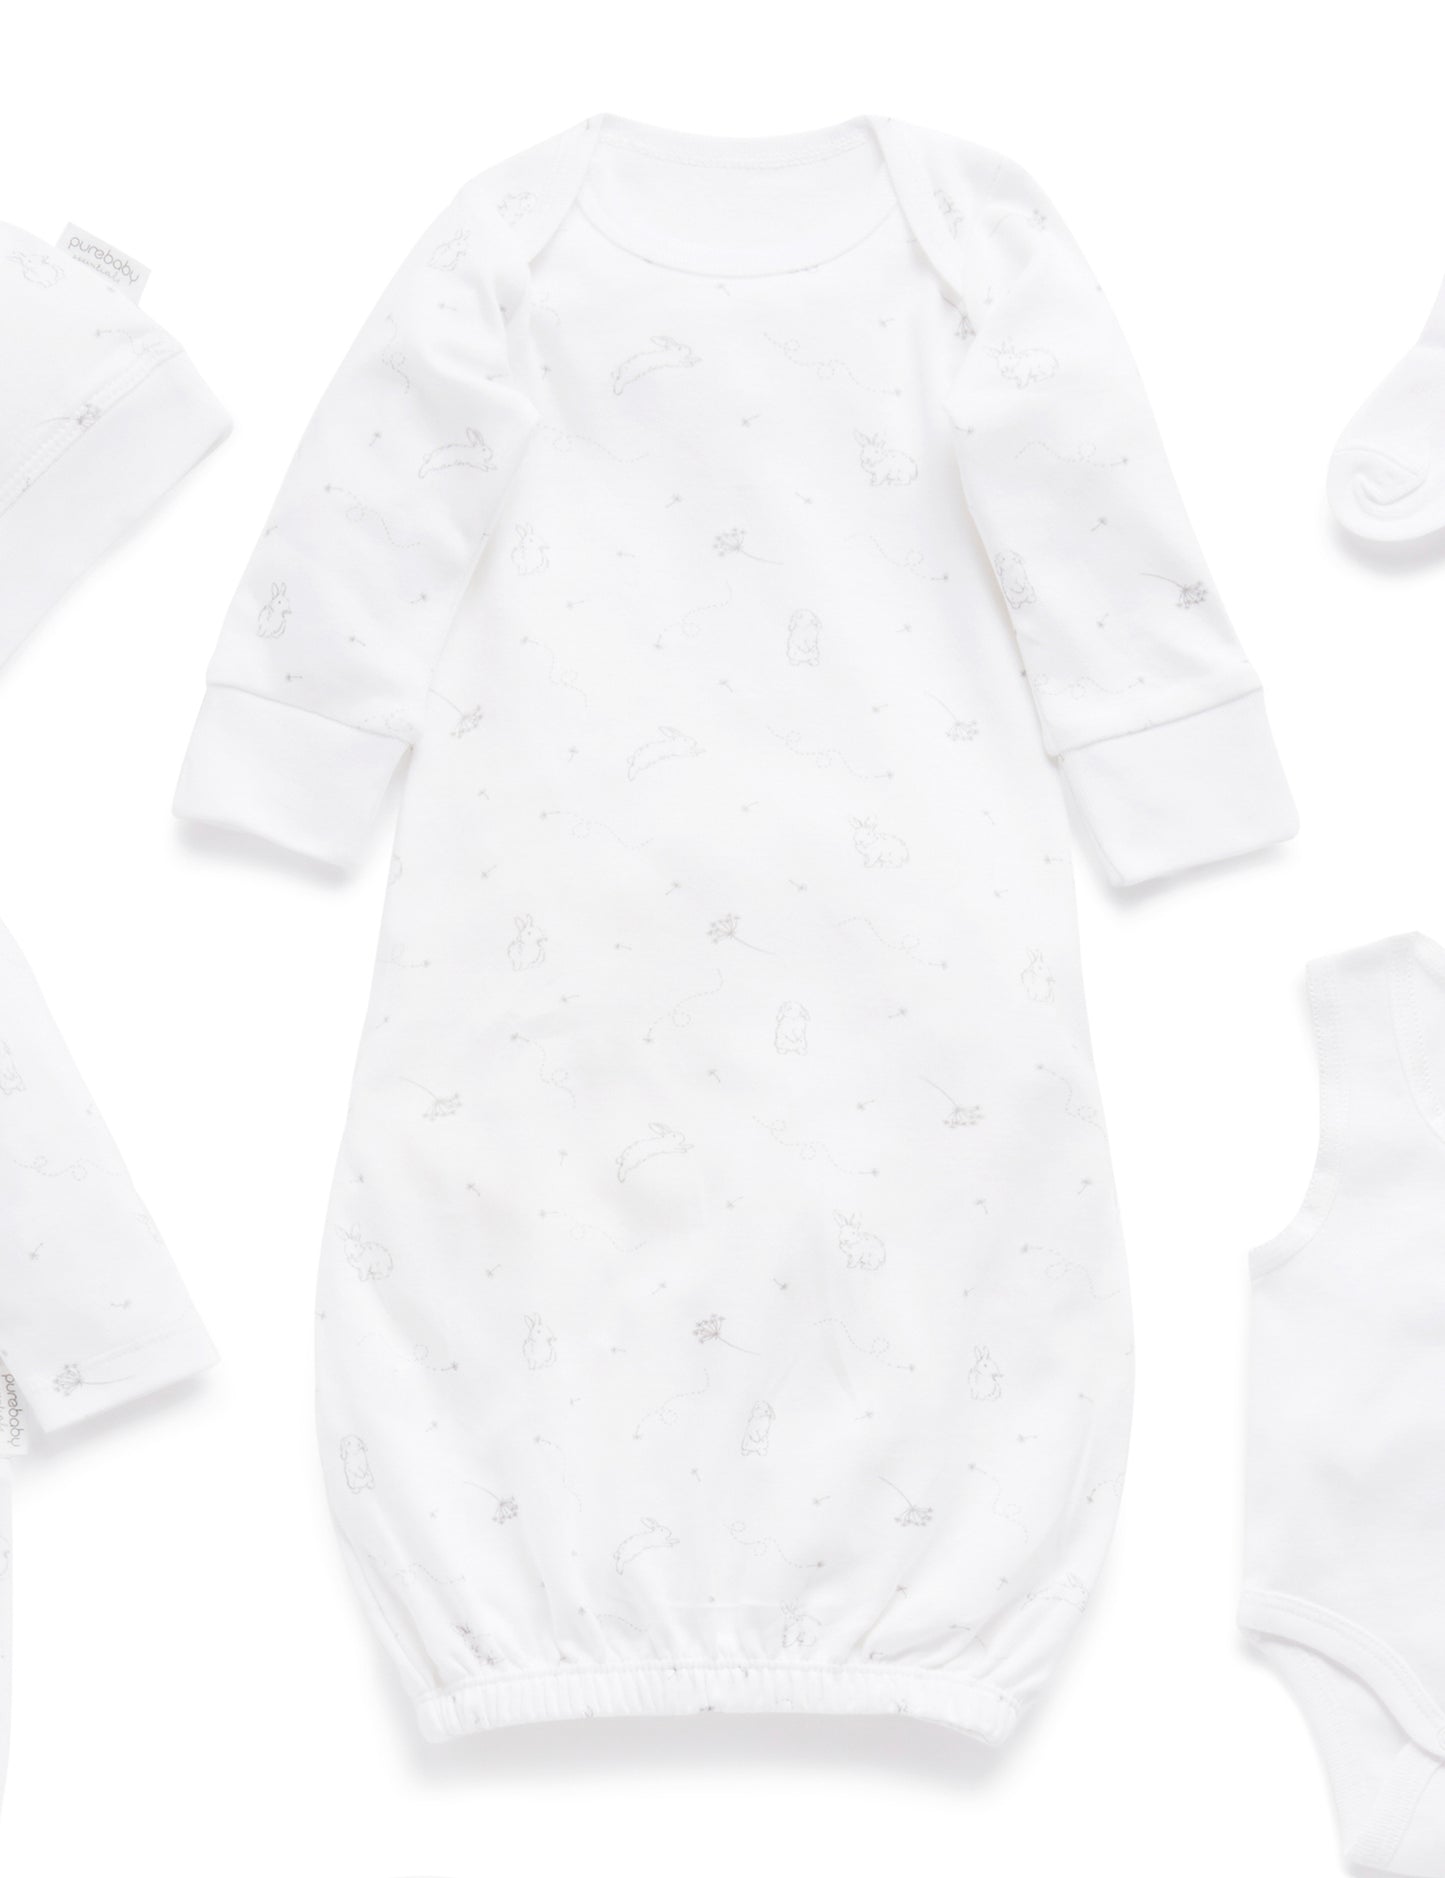 Newborn Essentials Hospital Bag - Purebaby Unisex Essentials - Baby's First Wardrobe